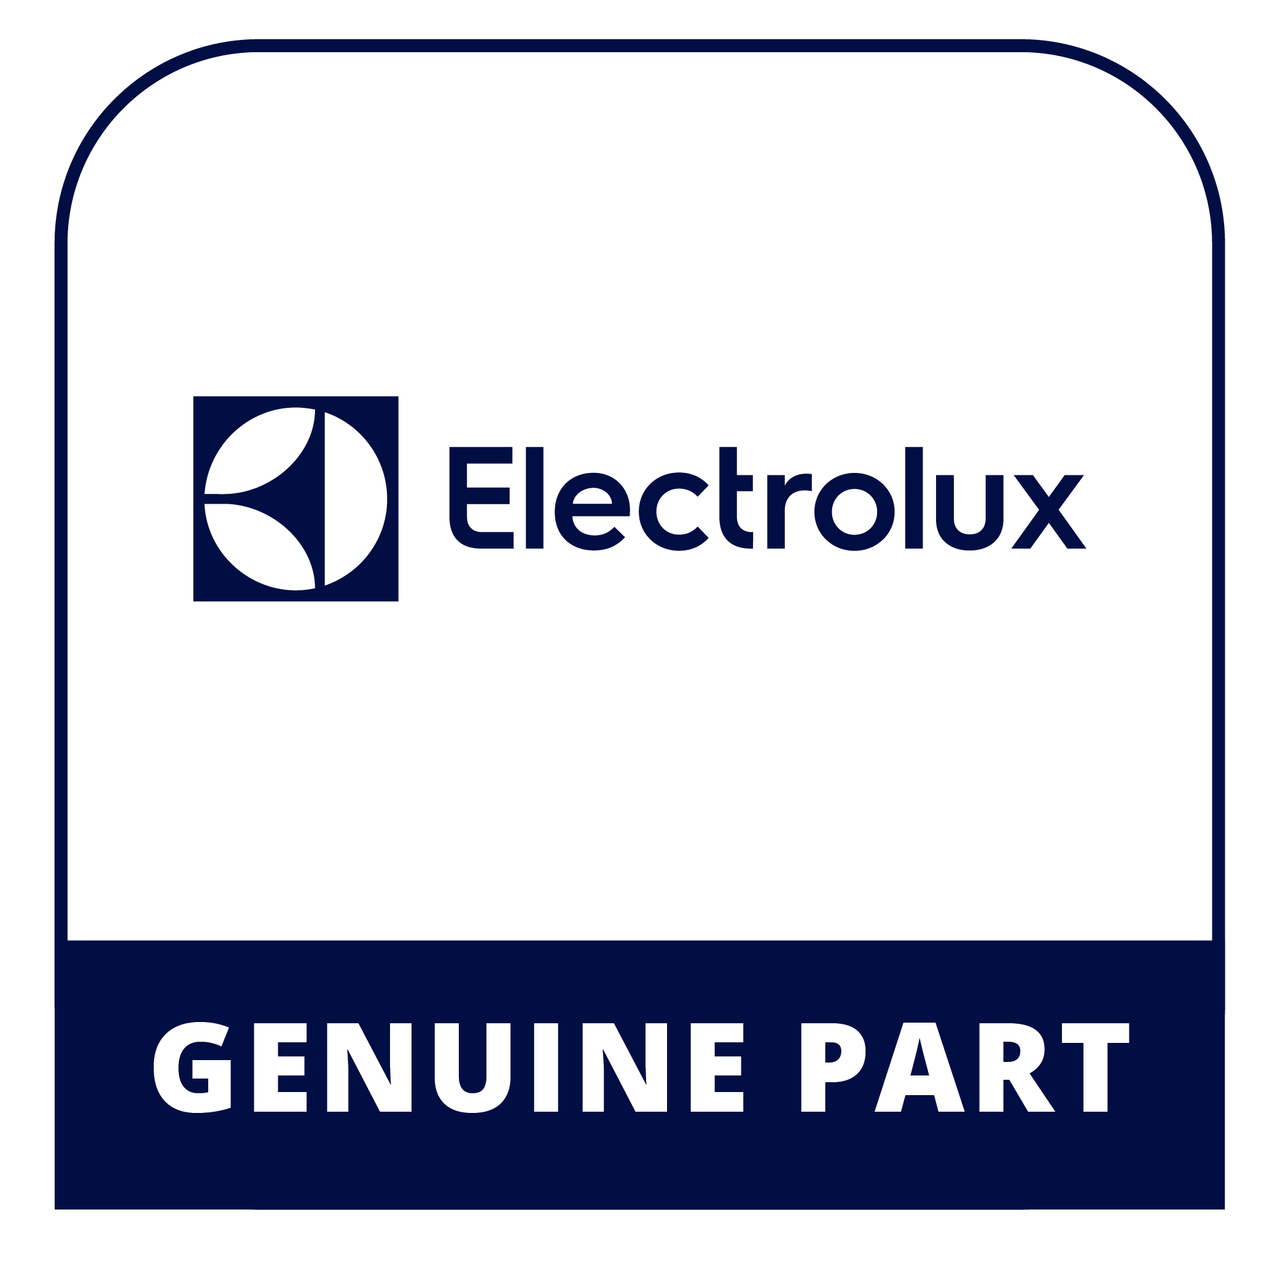 Frigidaire - Electrolux 137052500 - Switch - Genuine Electrolux Part